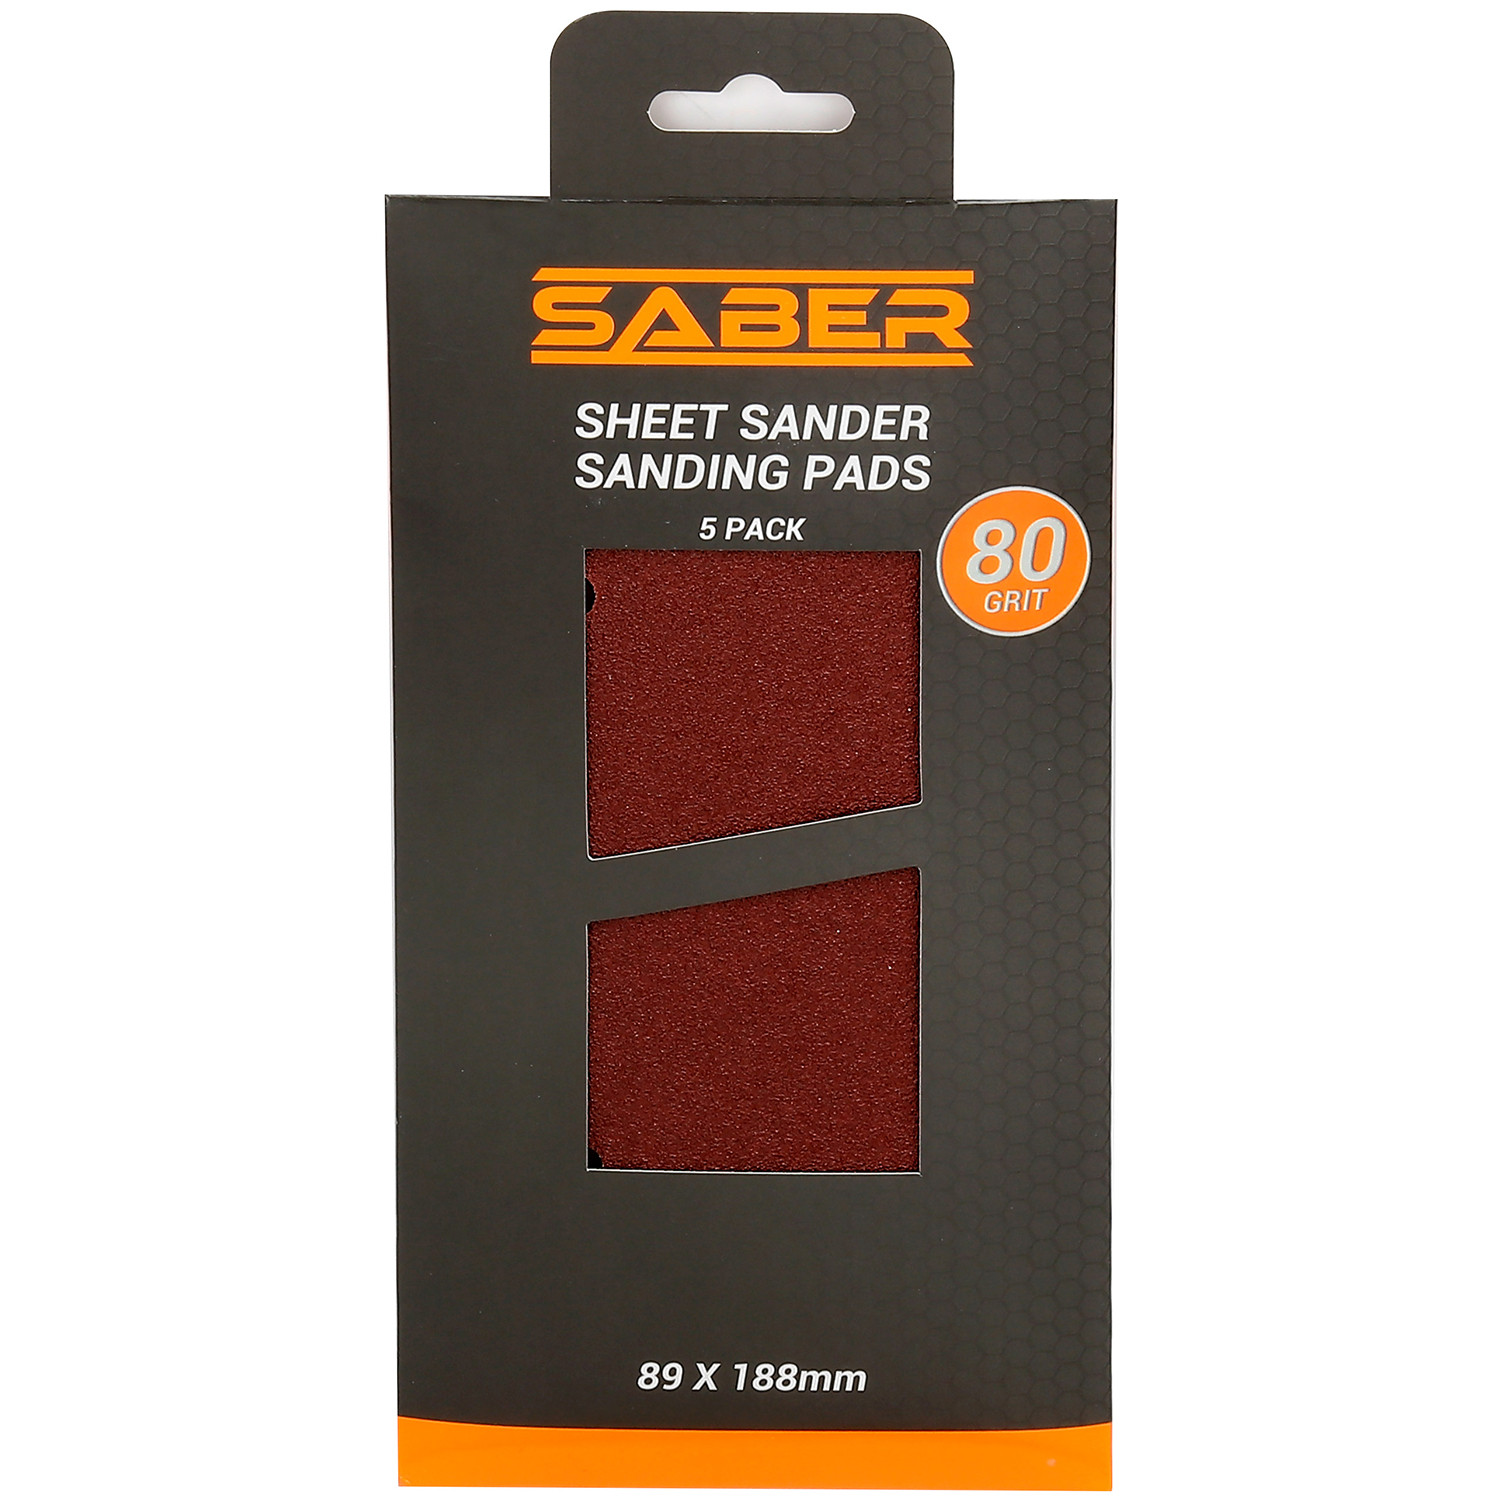 Saber Sheet Sander Sanding Pads 5 Pack Image